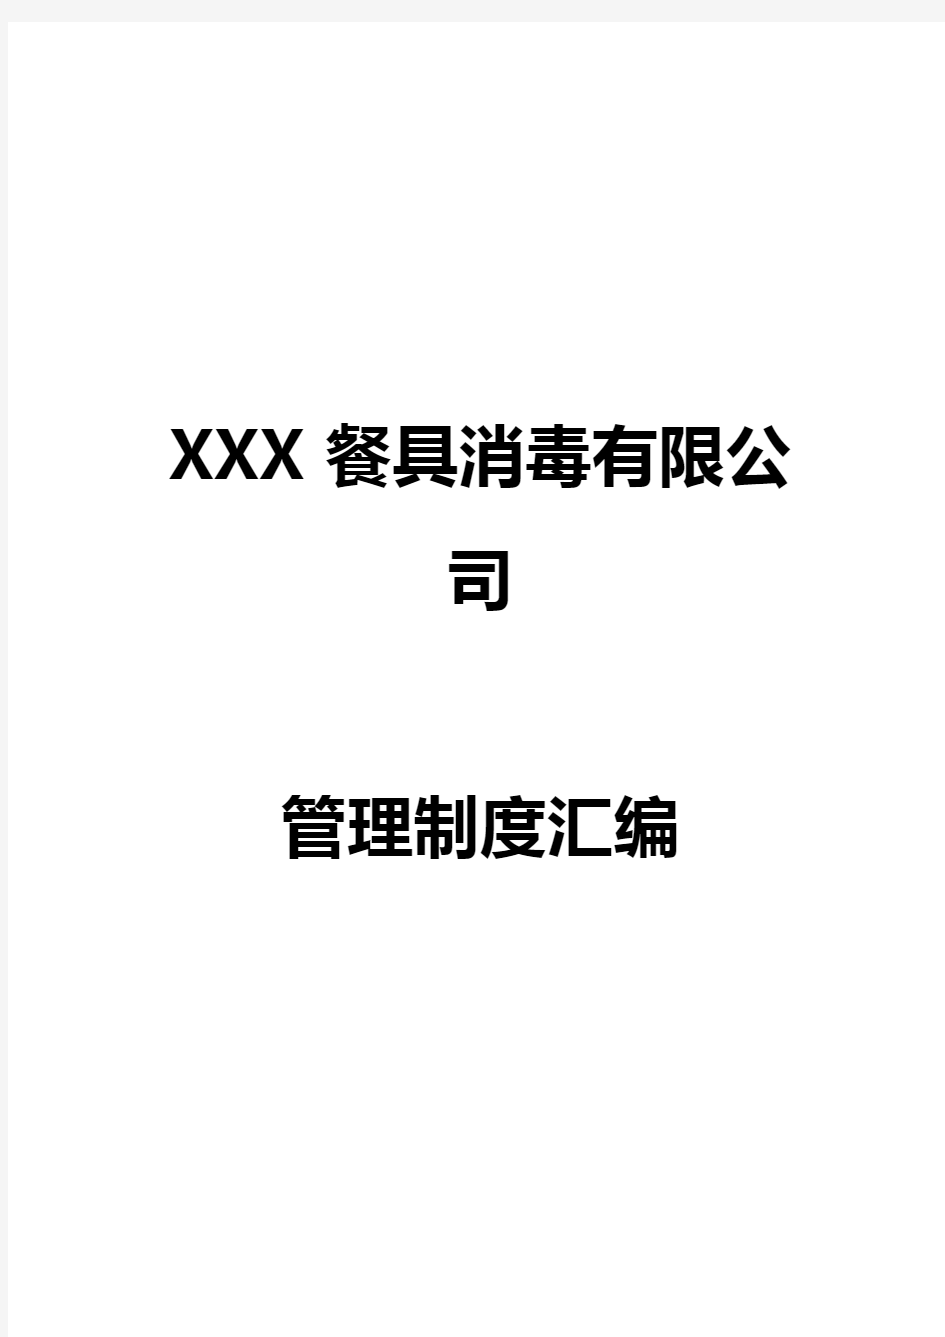 XX餐具消毒公司管理制度汇编手册 精品